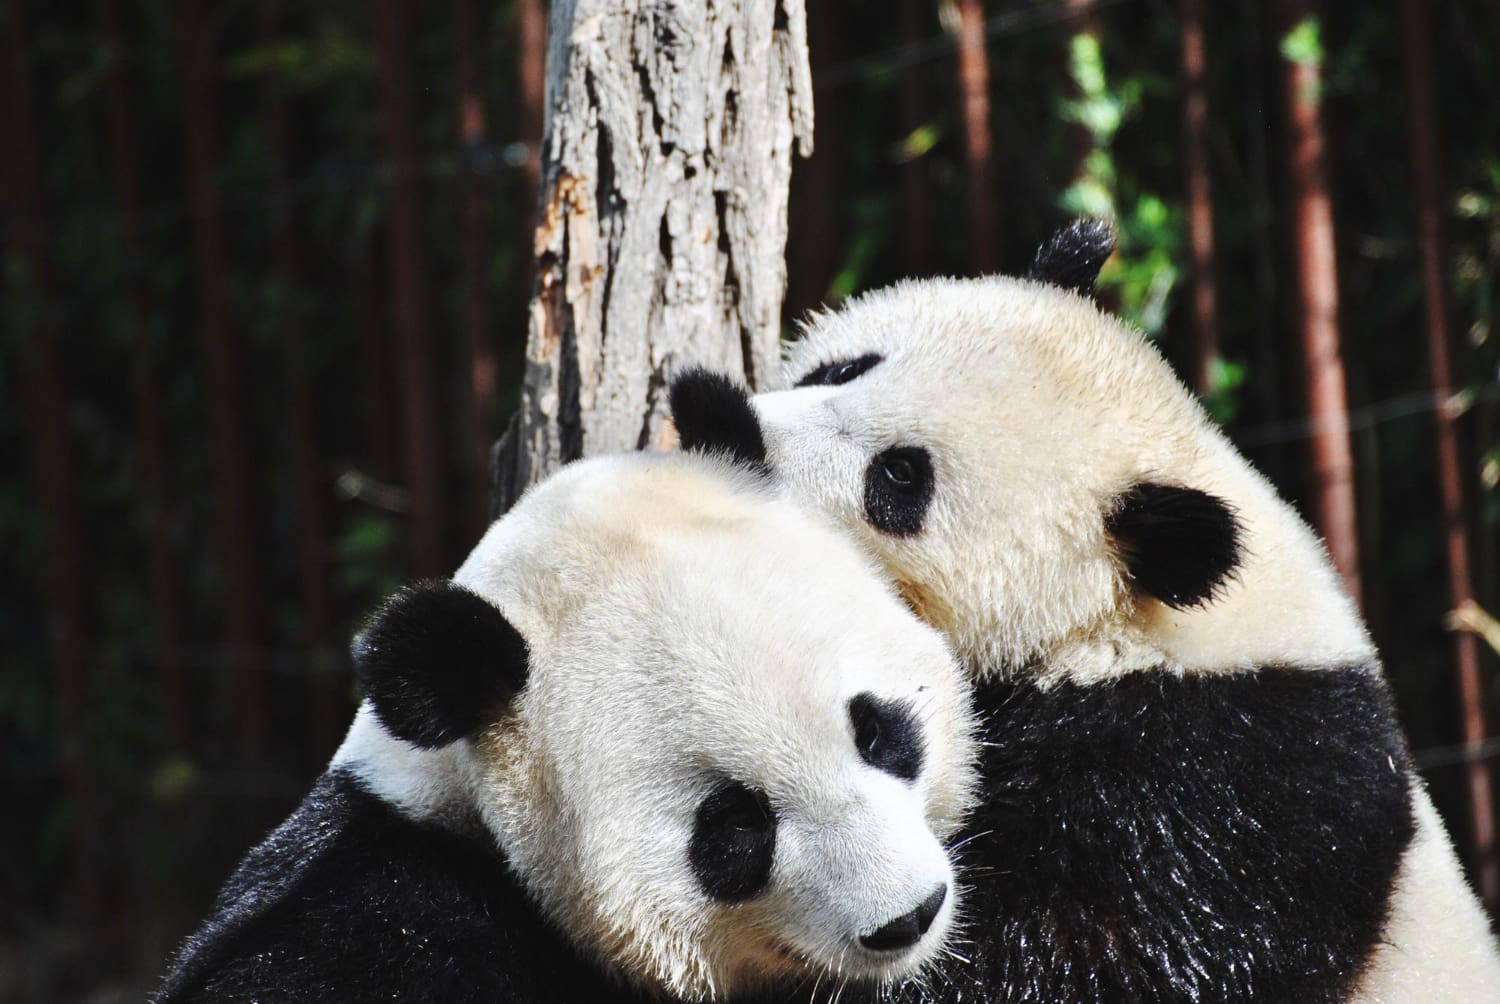 Panda diplomatije, pande